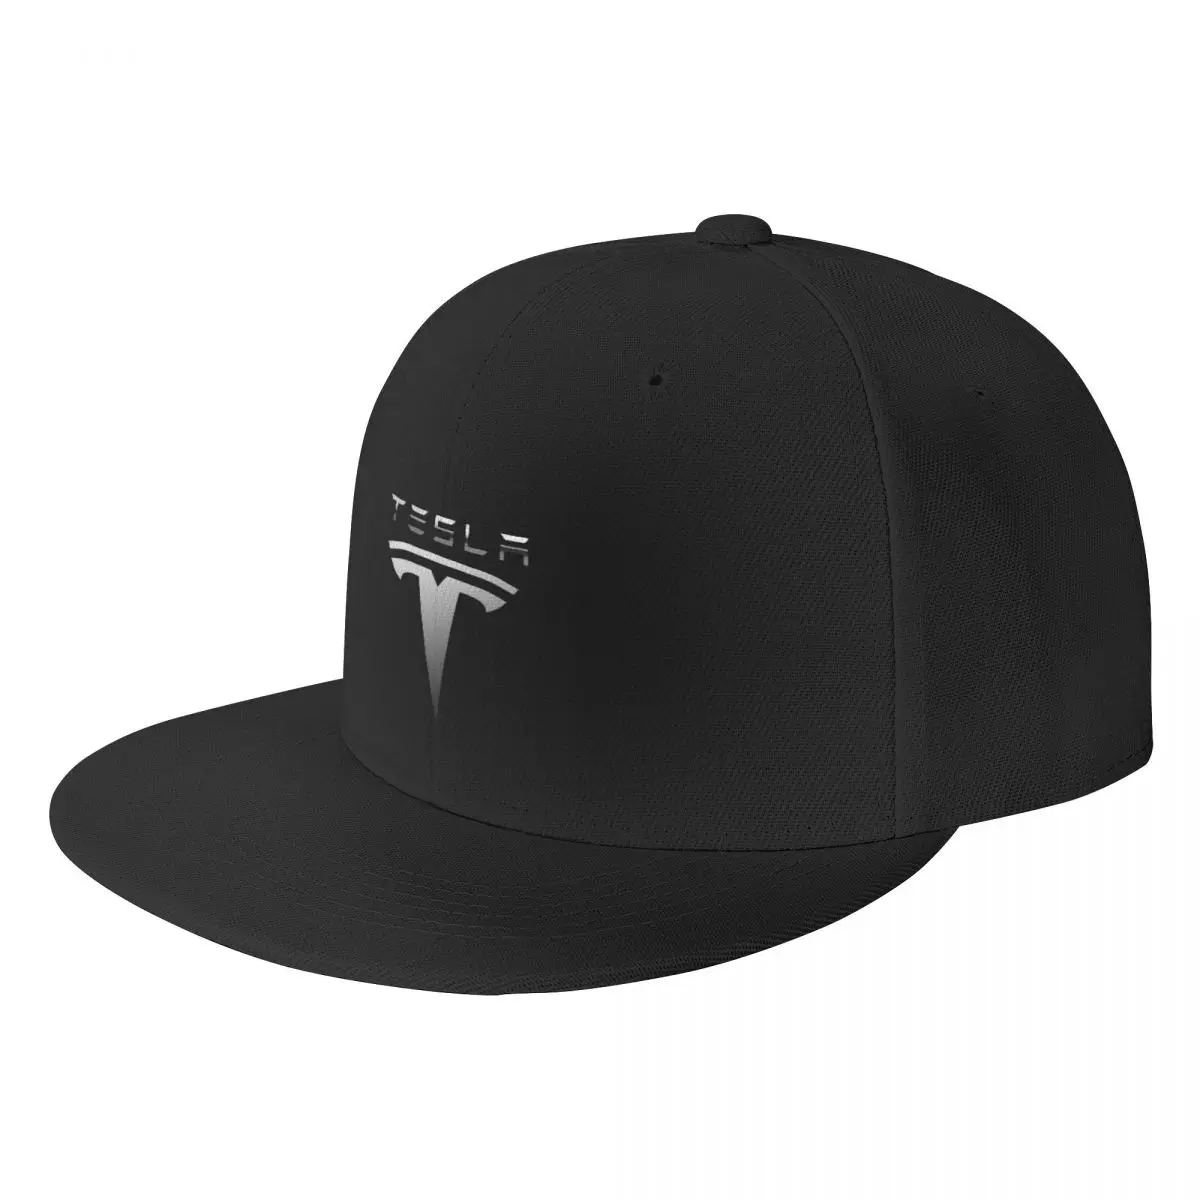 Бейсболка Tesla 777, Кепка с козырьком, Мужская кепка, Женская кепка, женские кепки, кепки для женщин